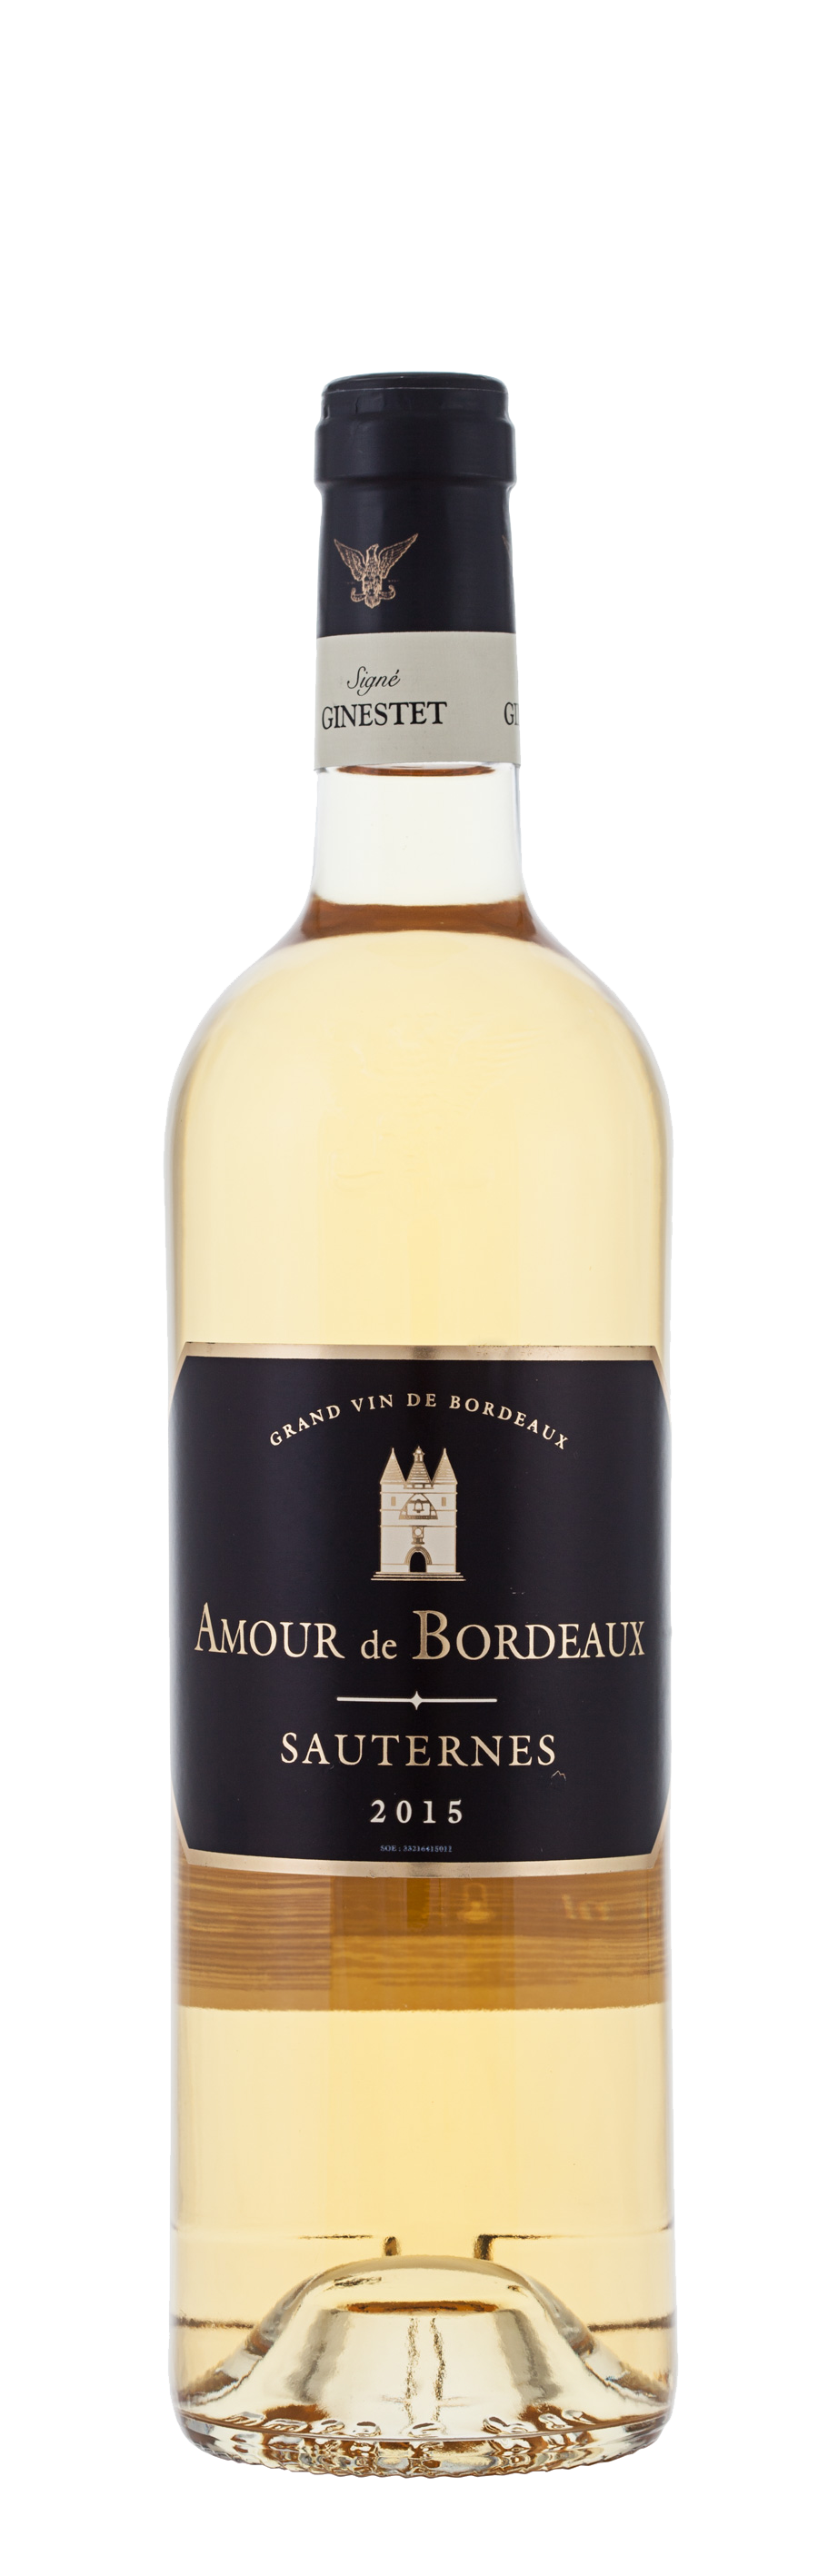 Amour de Bordeaux | Site Officiel